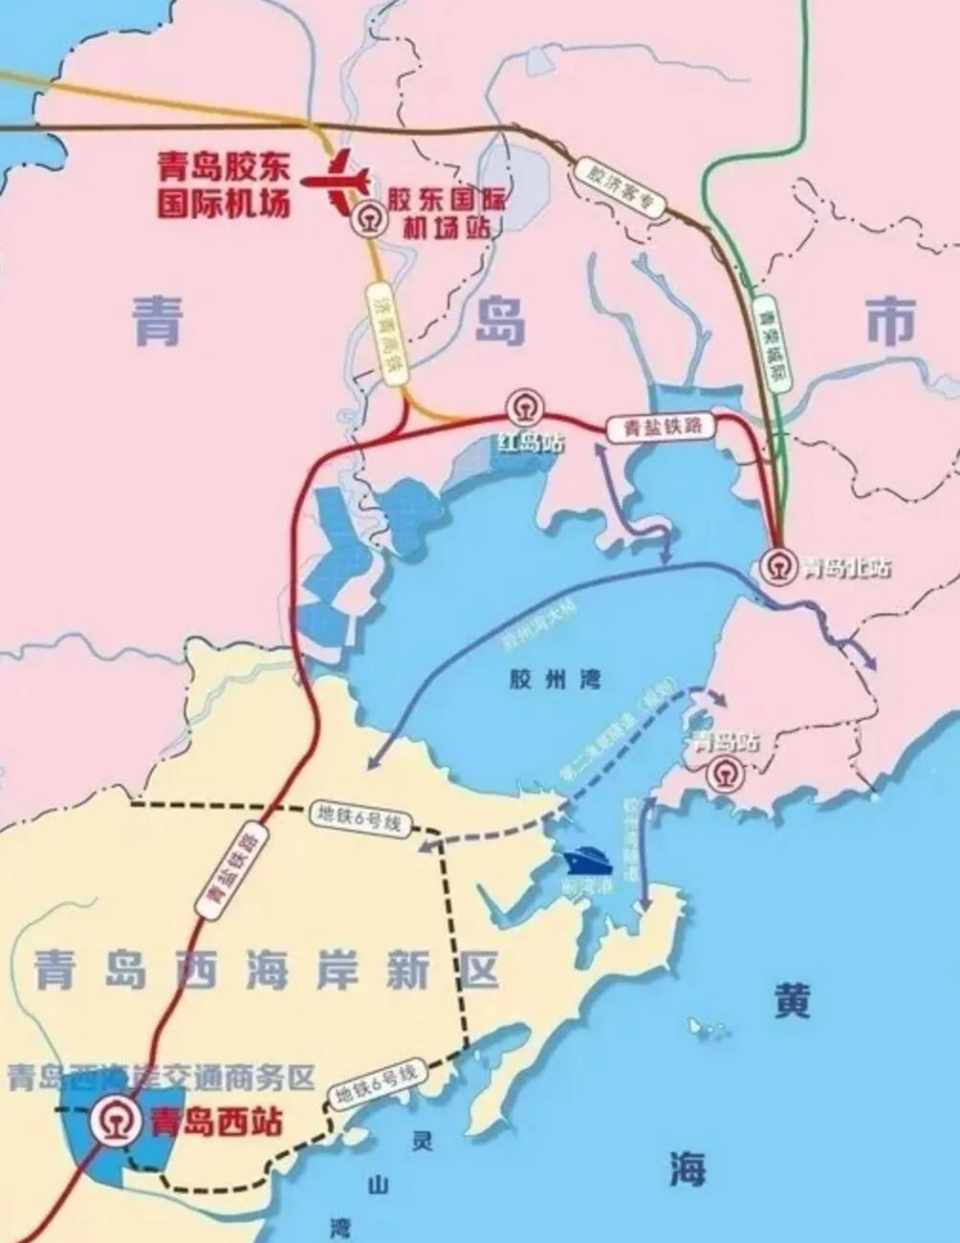 青连铁路最新线路图图片